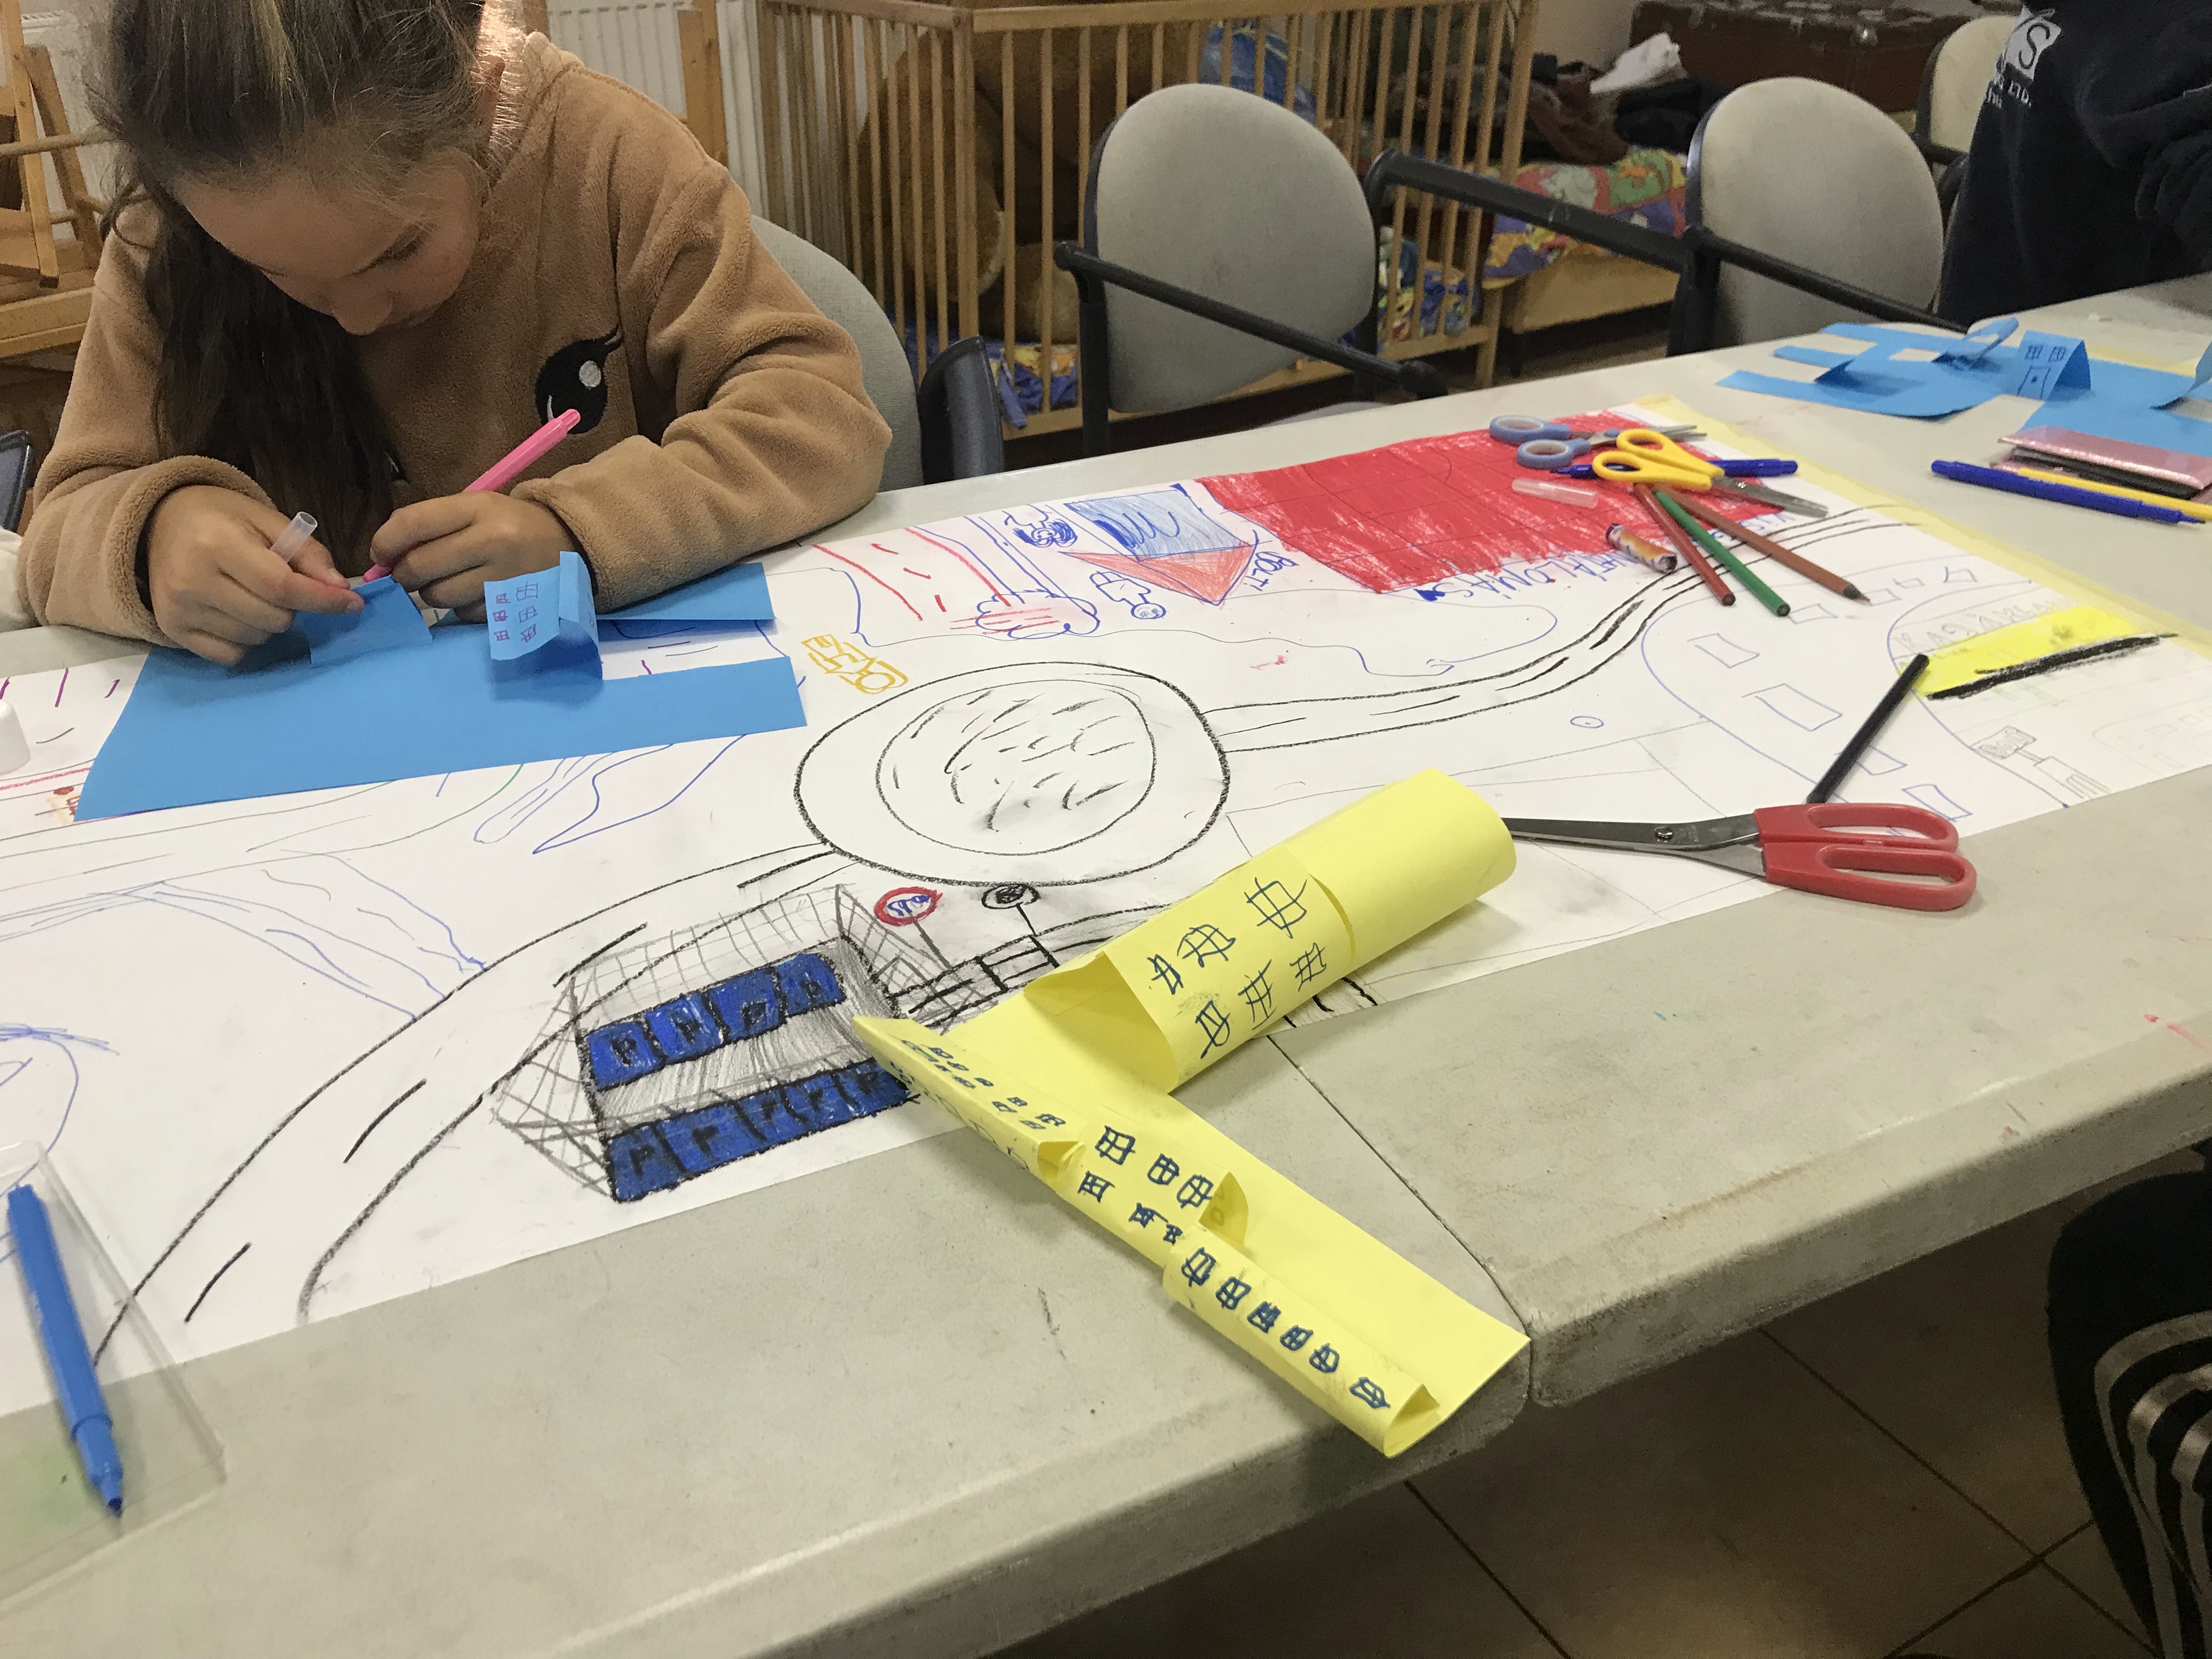 Kézműves foglalkozás, útitervek, papírváros készítése az esztergomi Tanoda diákjaival